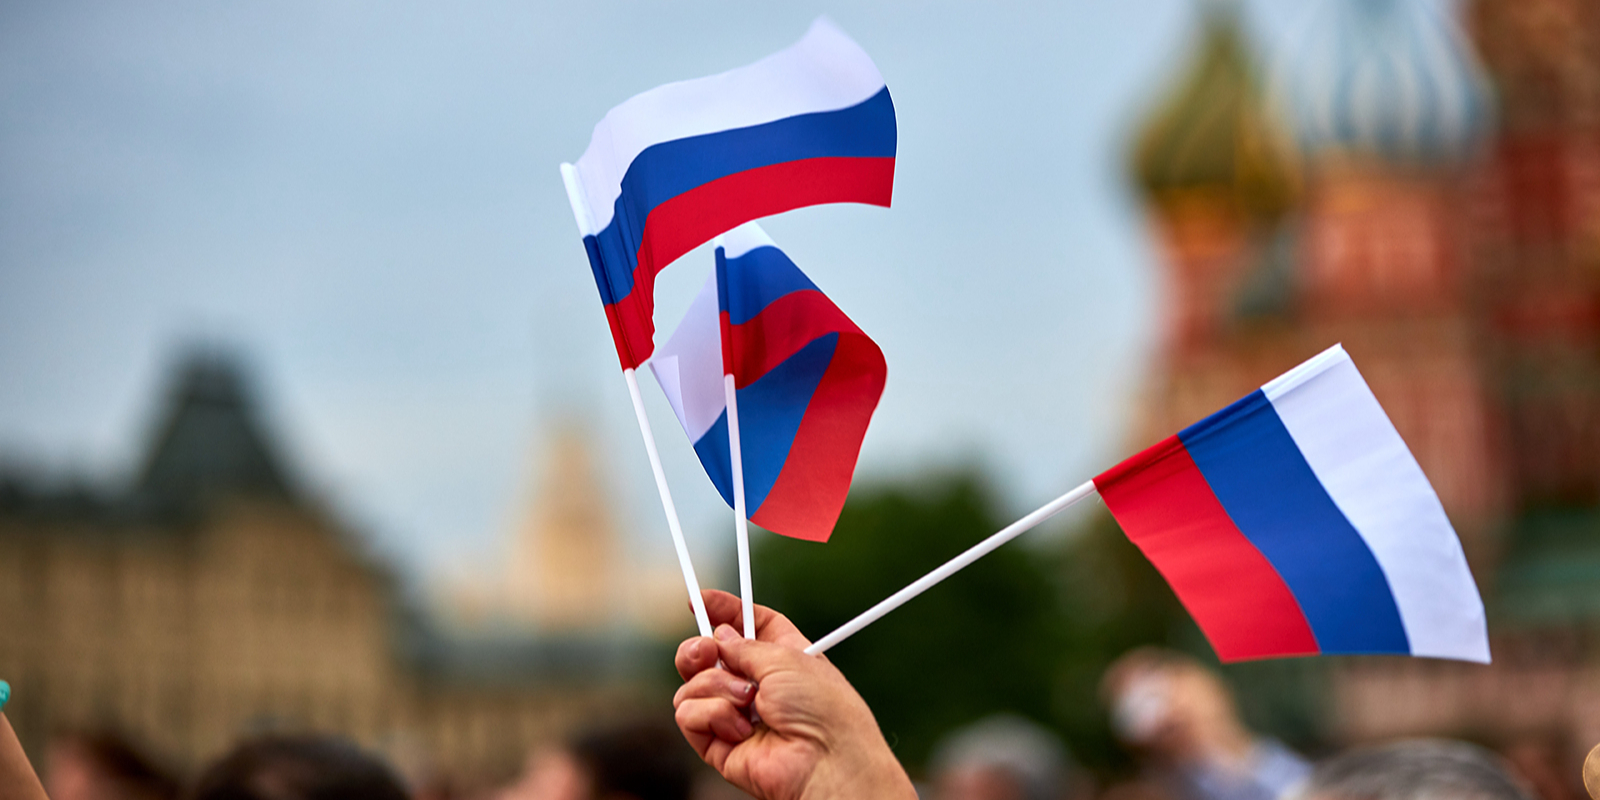 ОНФ проведет патриотическую акцию «Своих не бросаем» 23 сентября на Манежной площади. Фото: сайт мэра Москвы